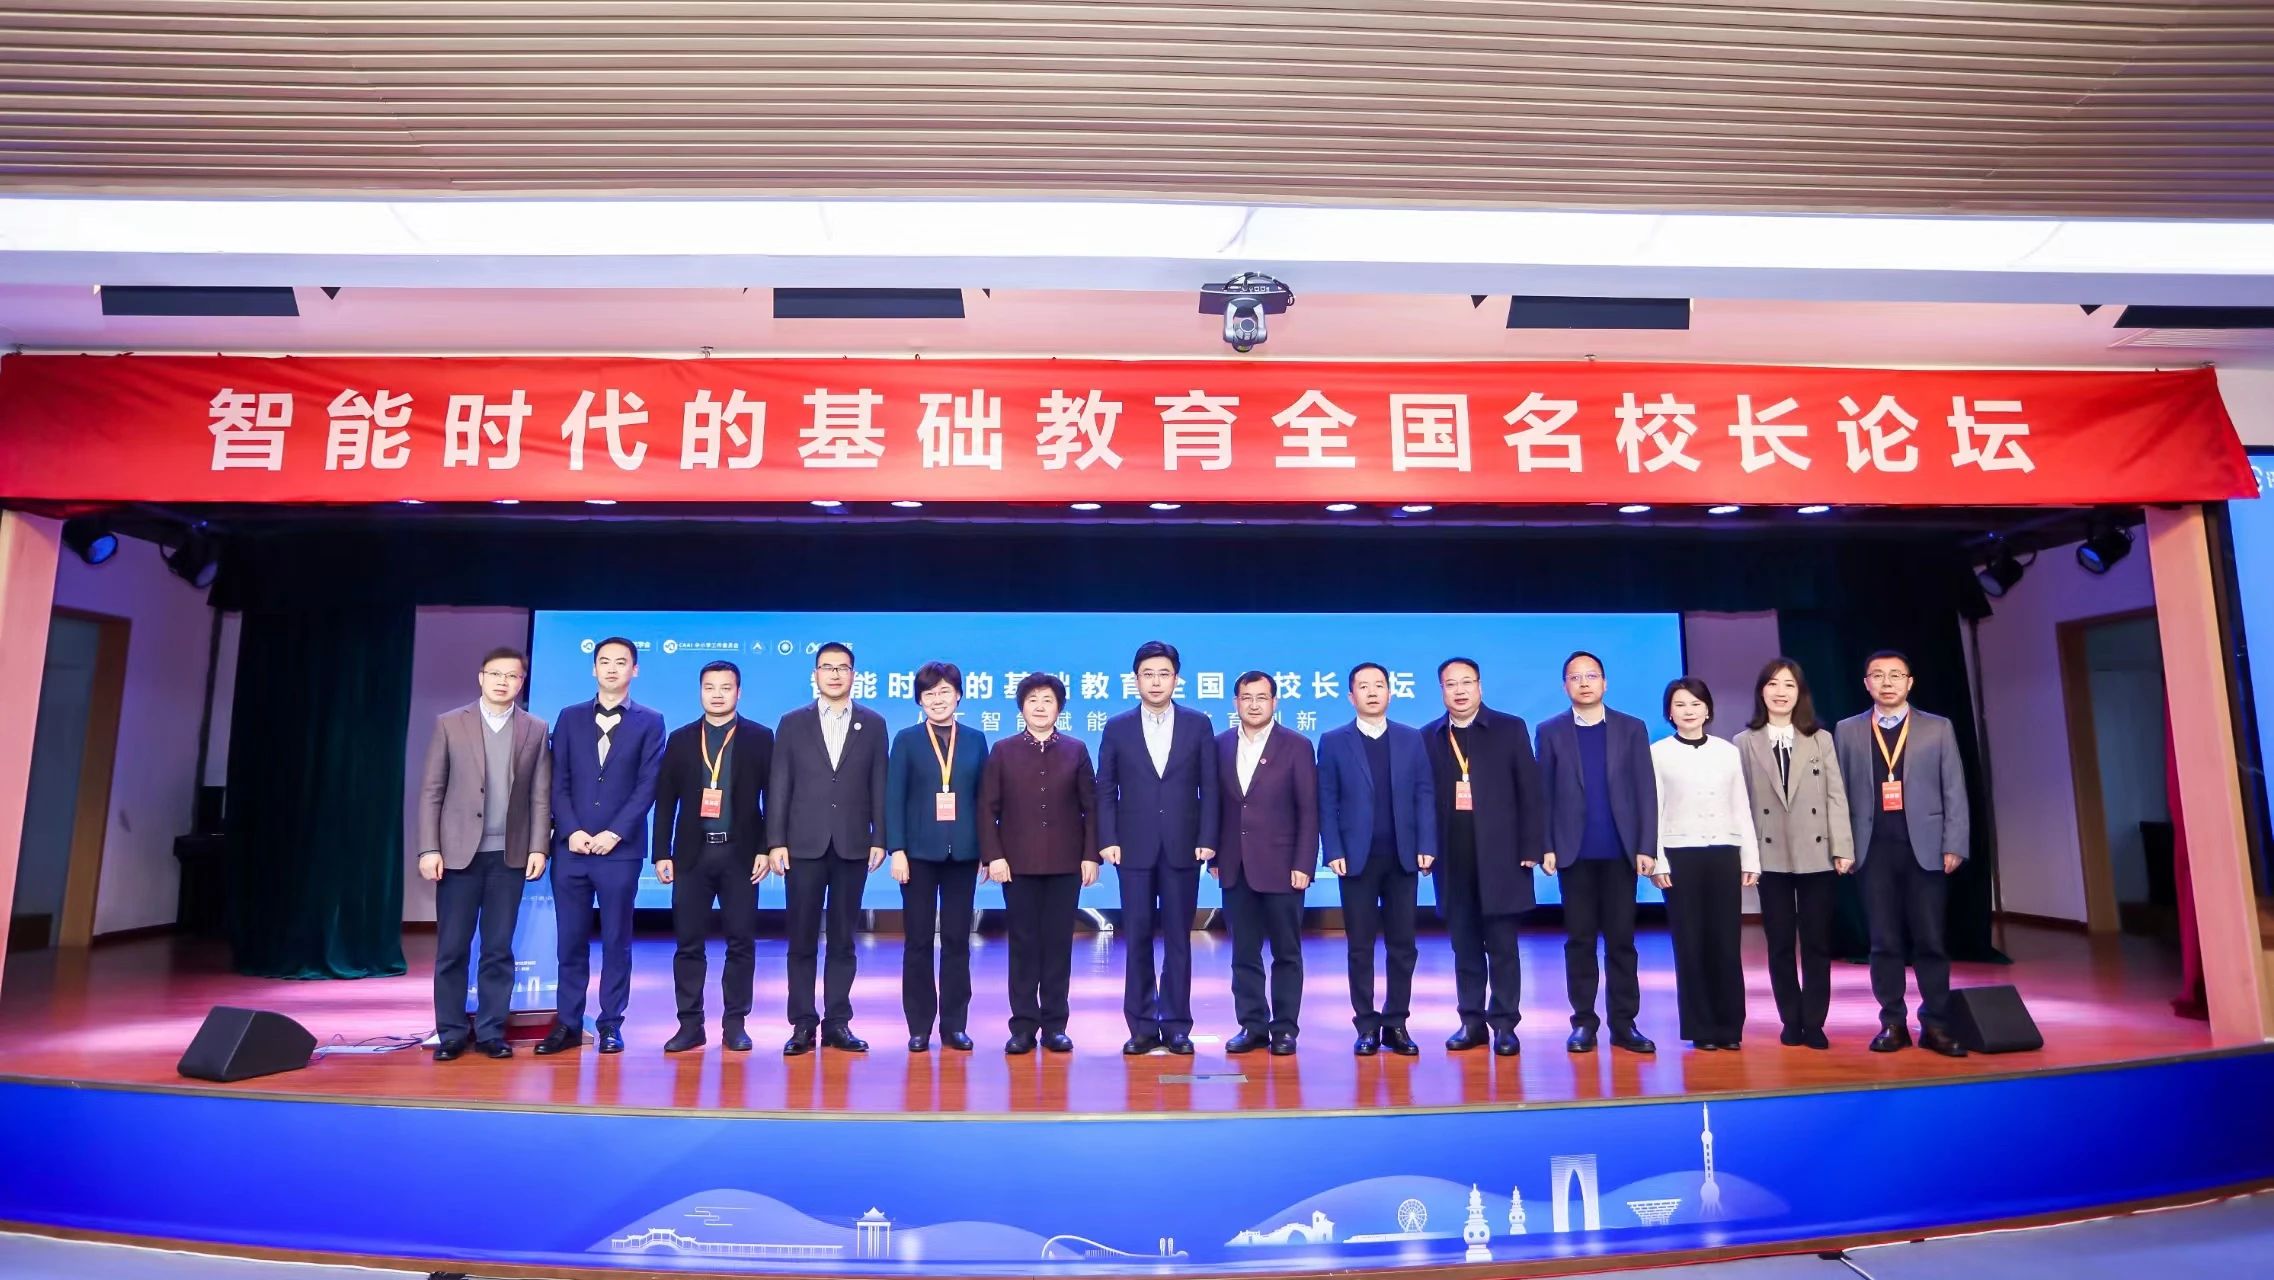 拥抱智能时代 展望教育未来 | “智能时代的基础教育全国名校长论坛”在杭州外国语学校成功举办